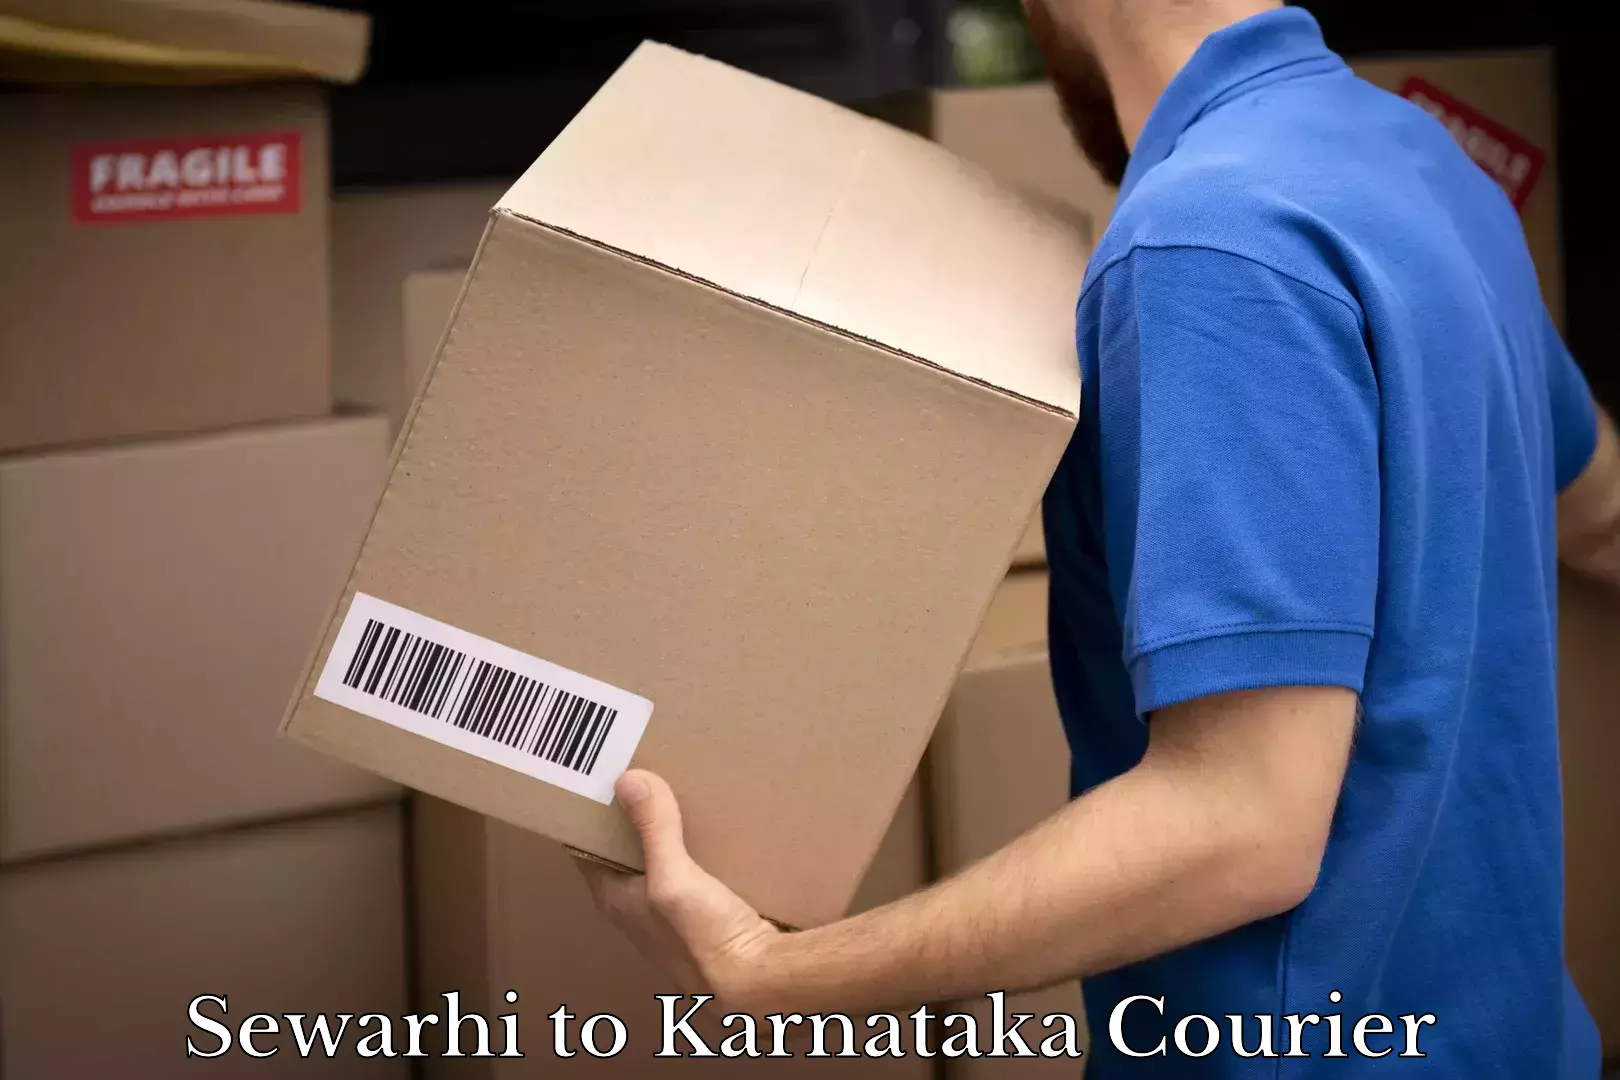 Punctual parcel services Sewarhi to Karnataka